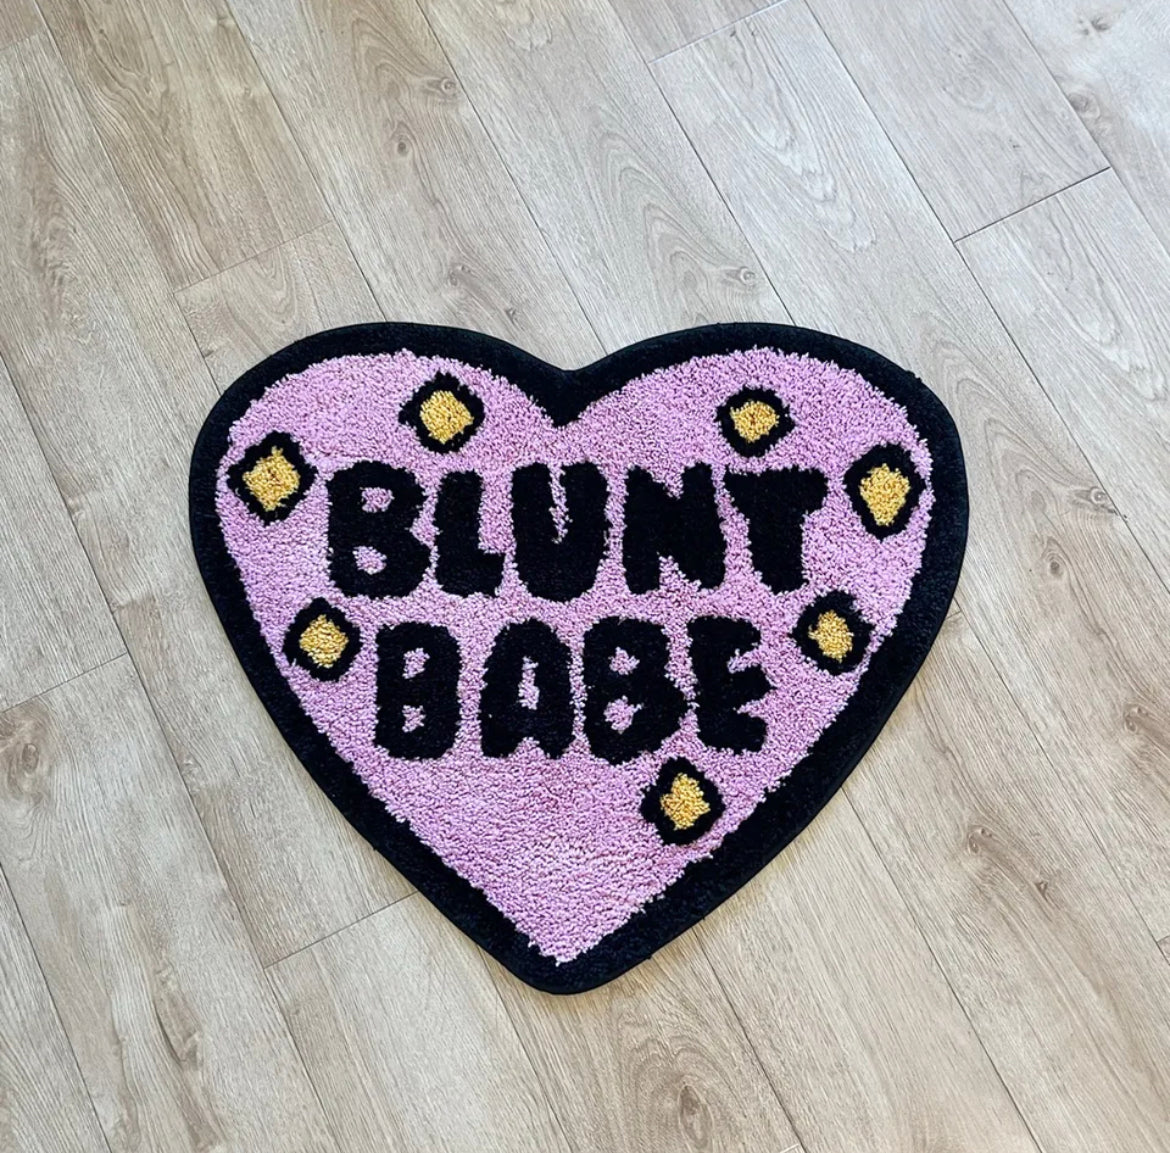 Blunt babe rug (60x60cm)